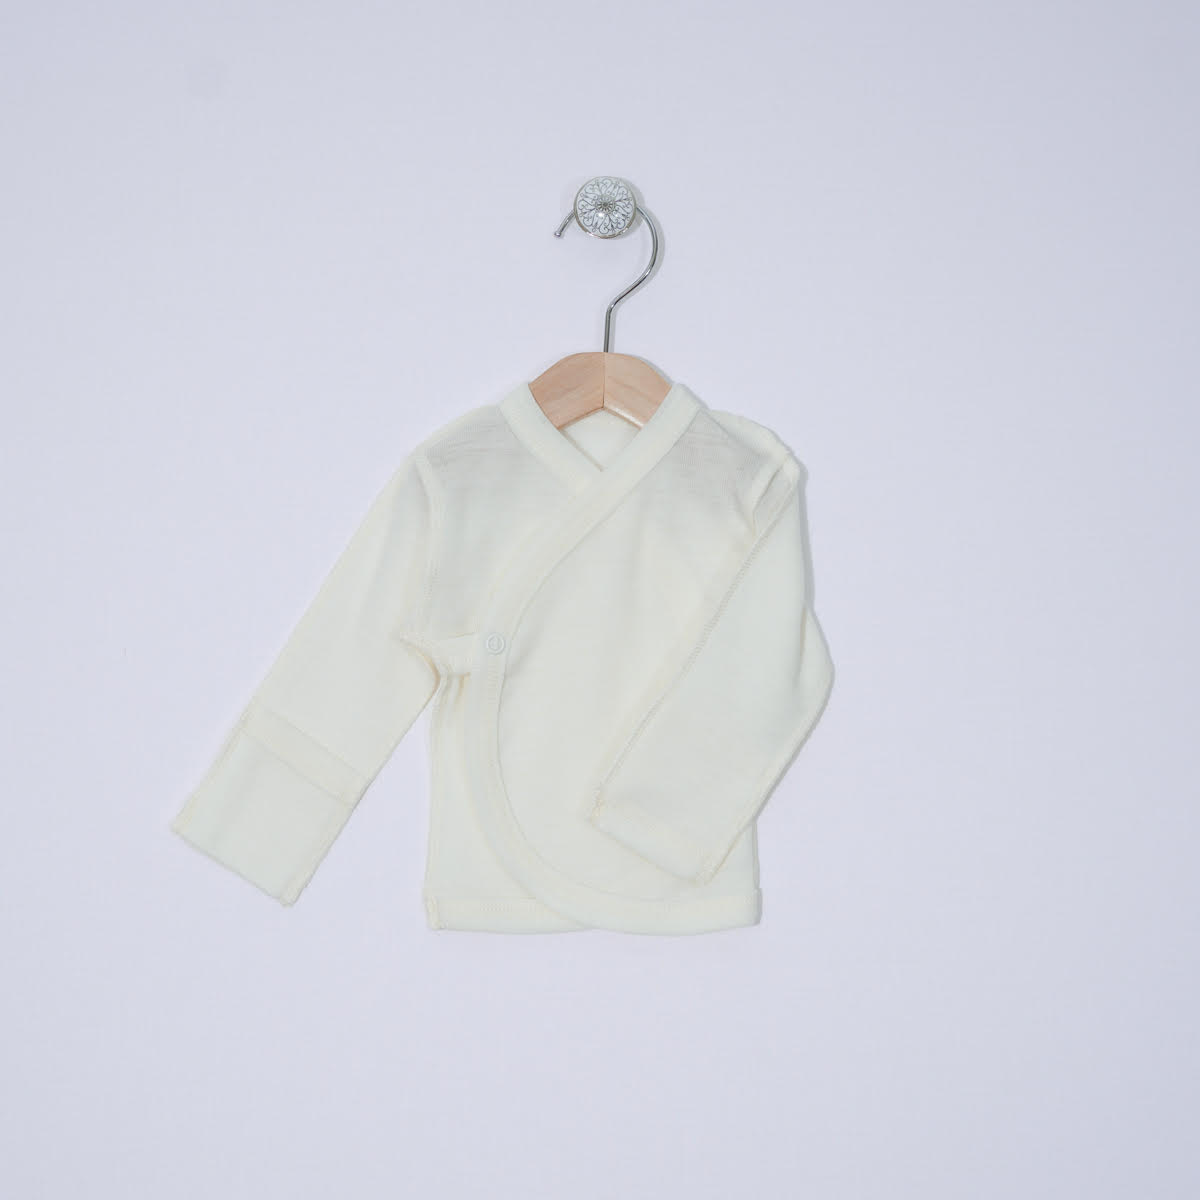 Merino shirt with silk